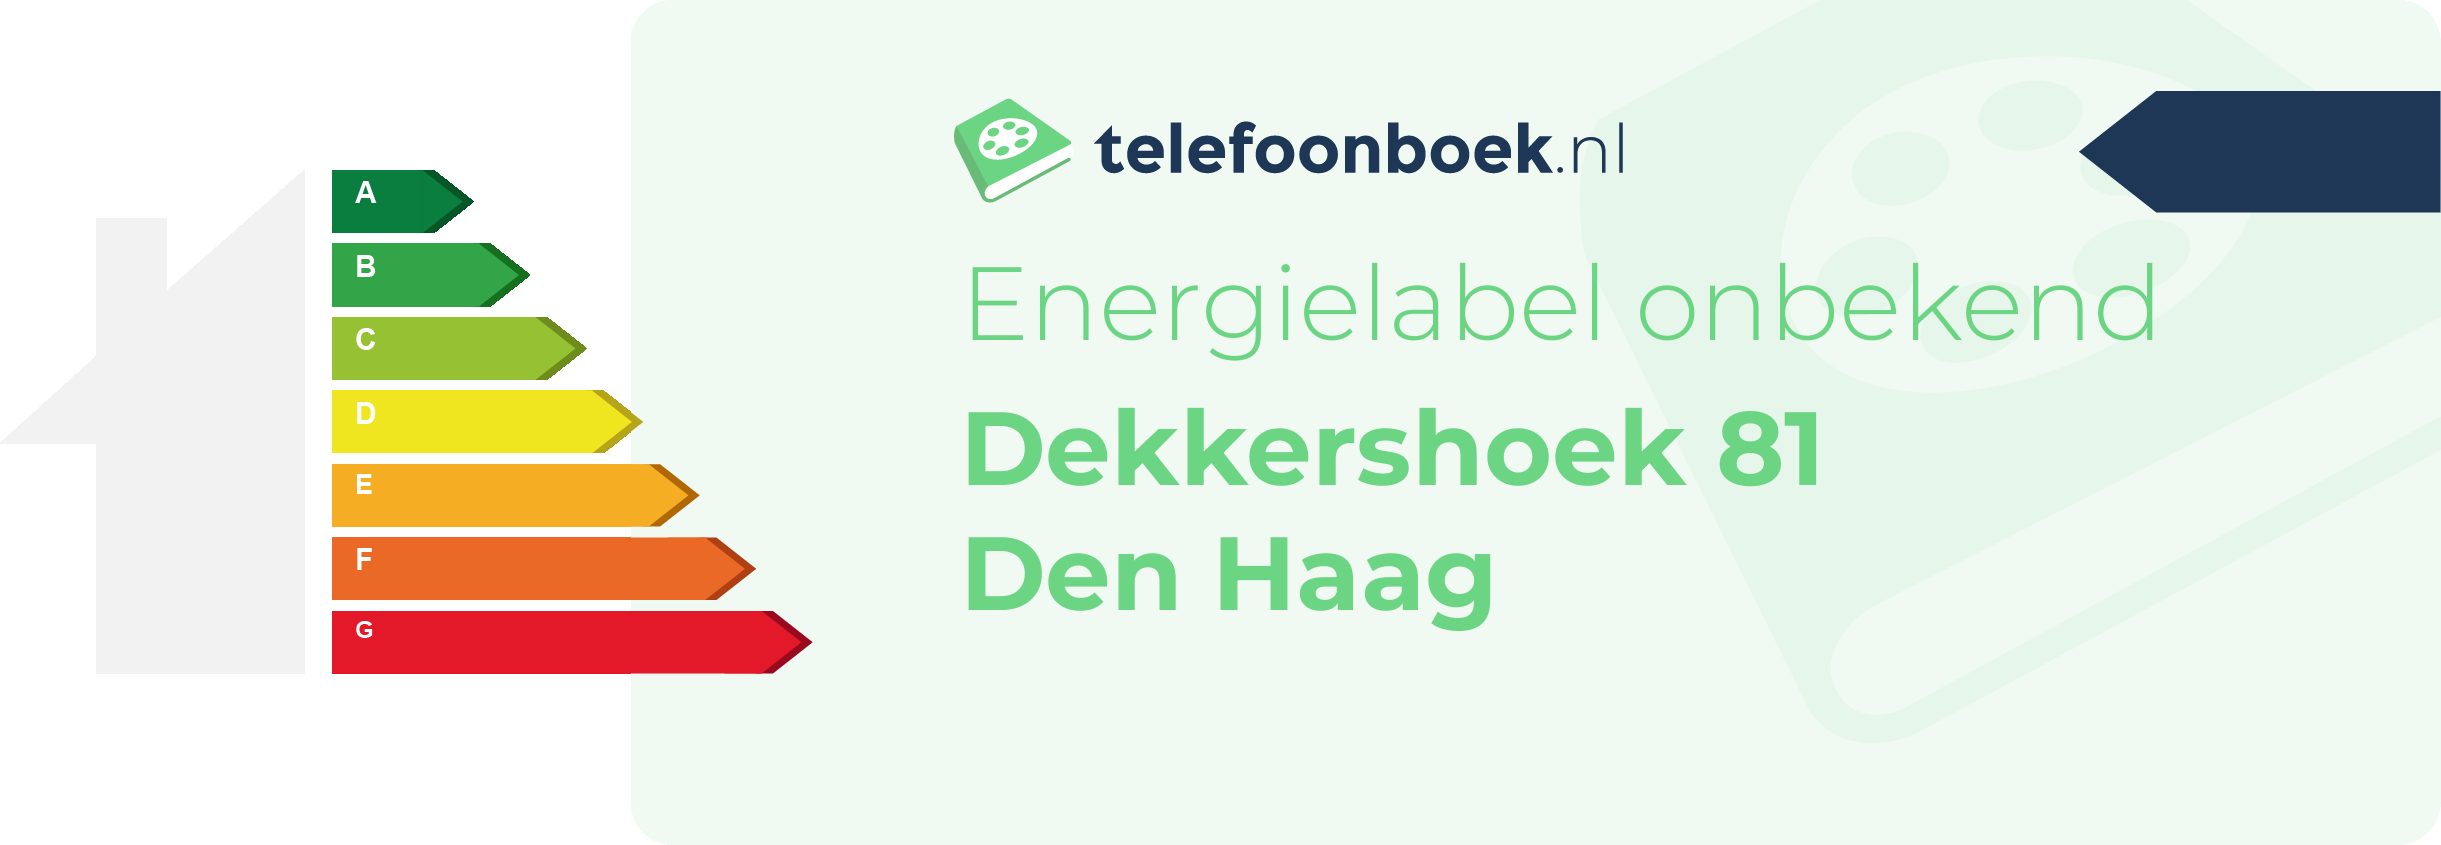 Energielabel Dekkershoek 81 Den Haag